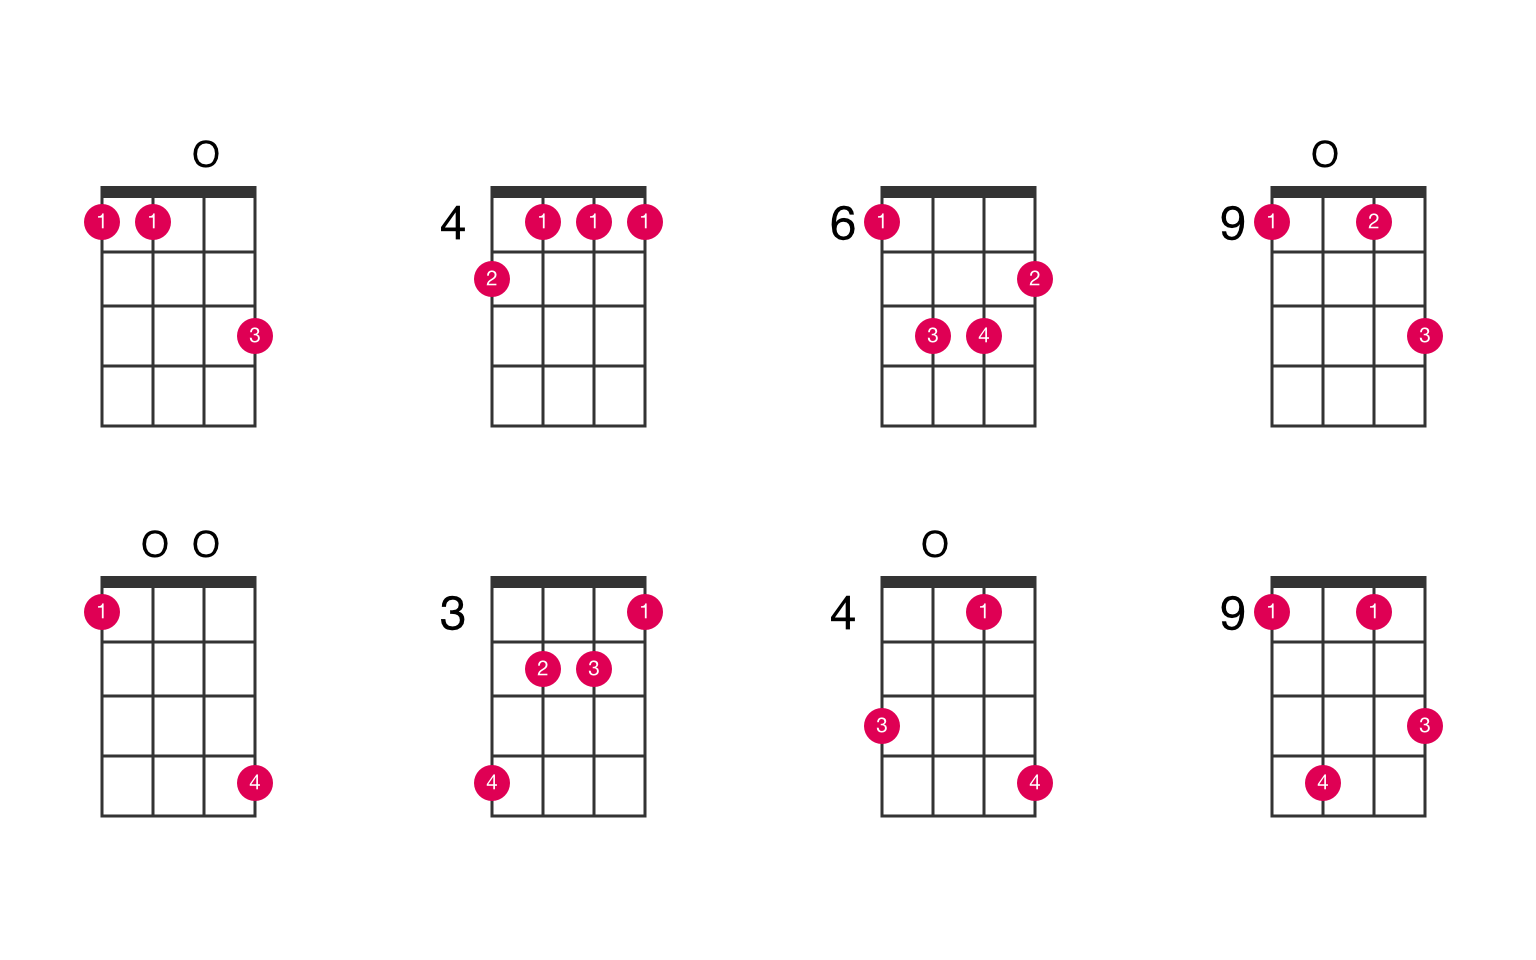 D-flat minor major 7th ukulele chord - UkeLib Chords